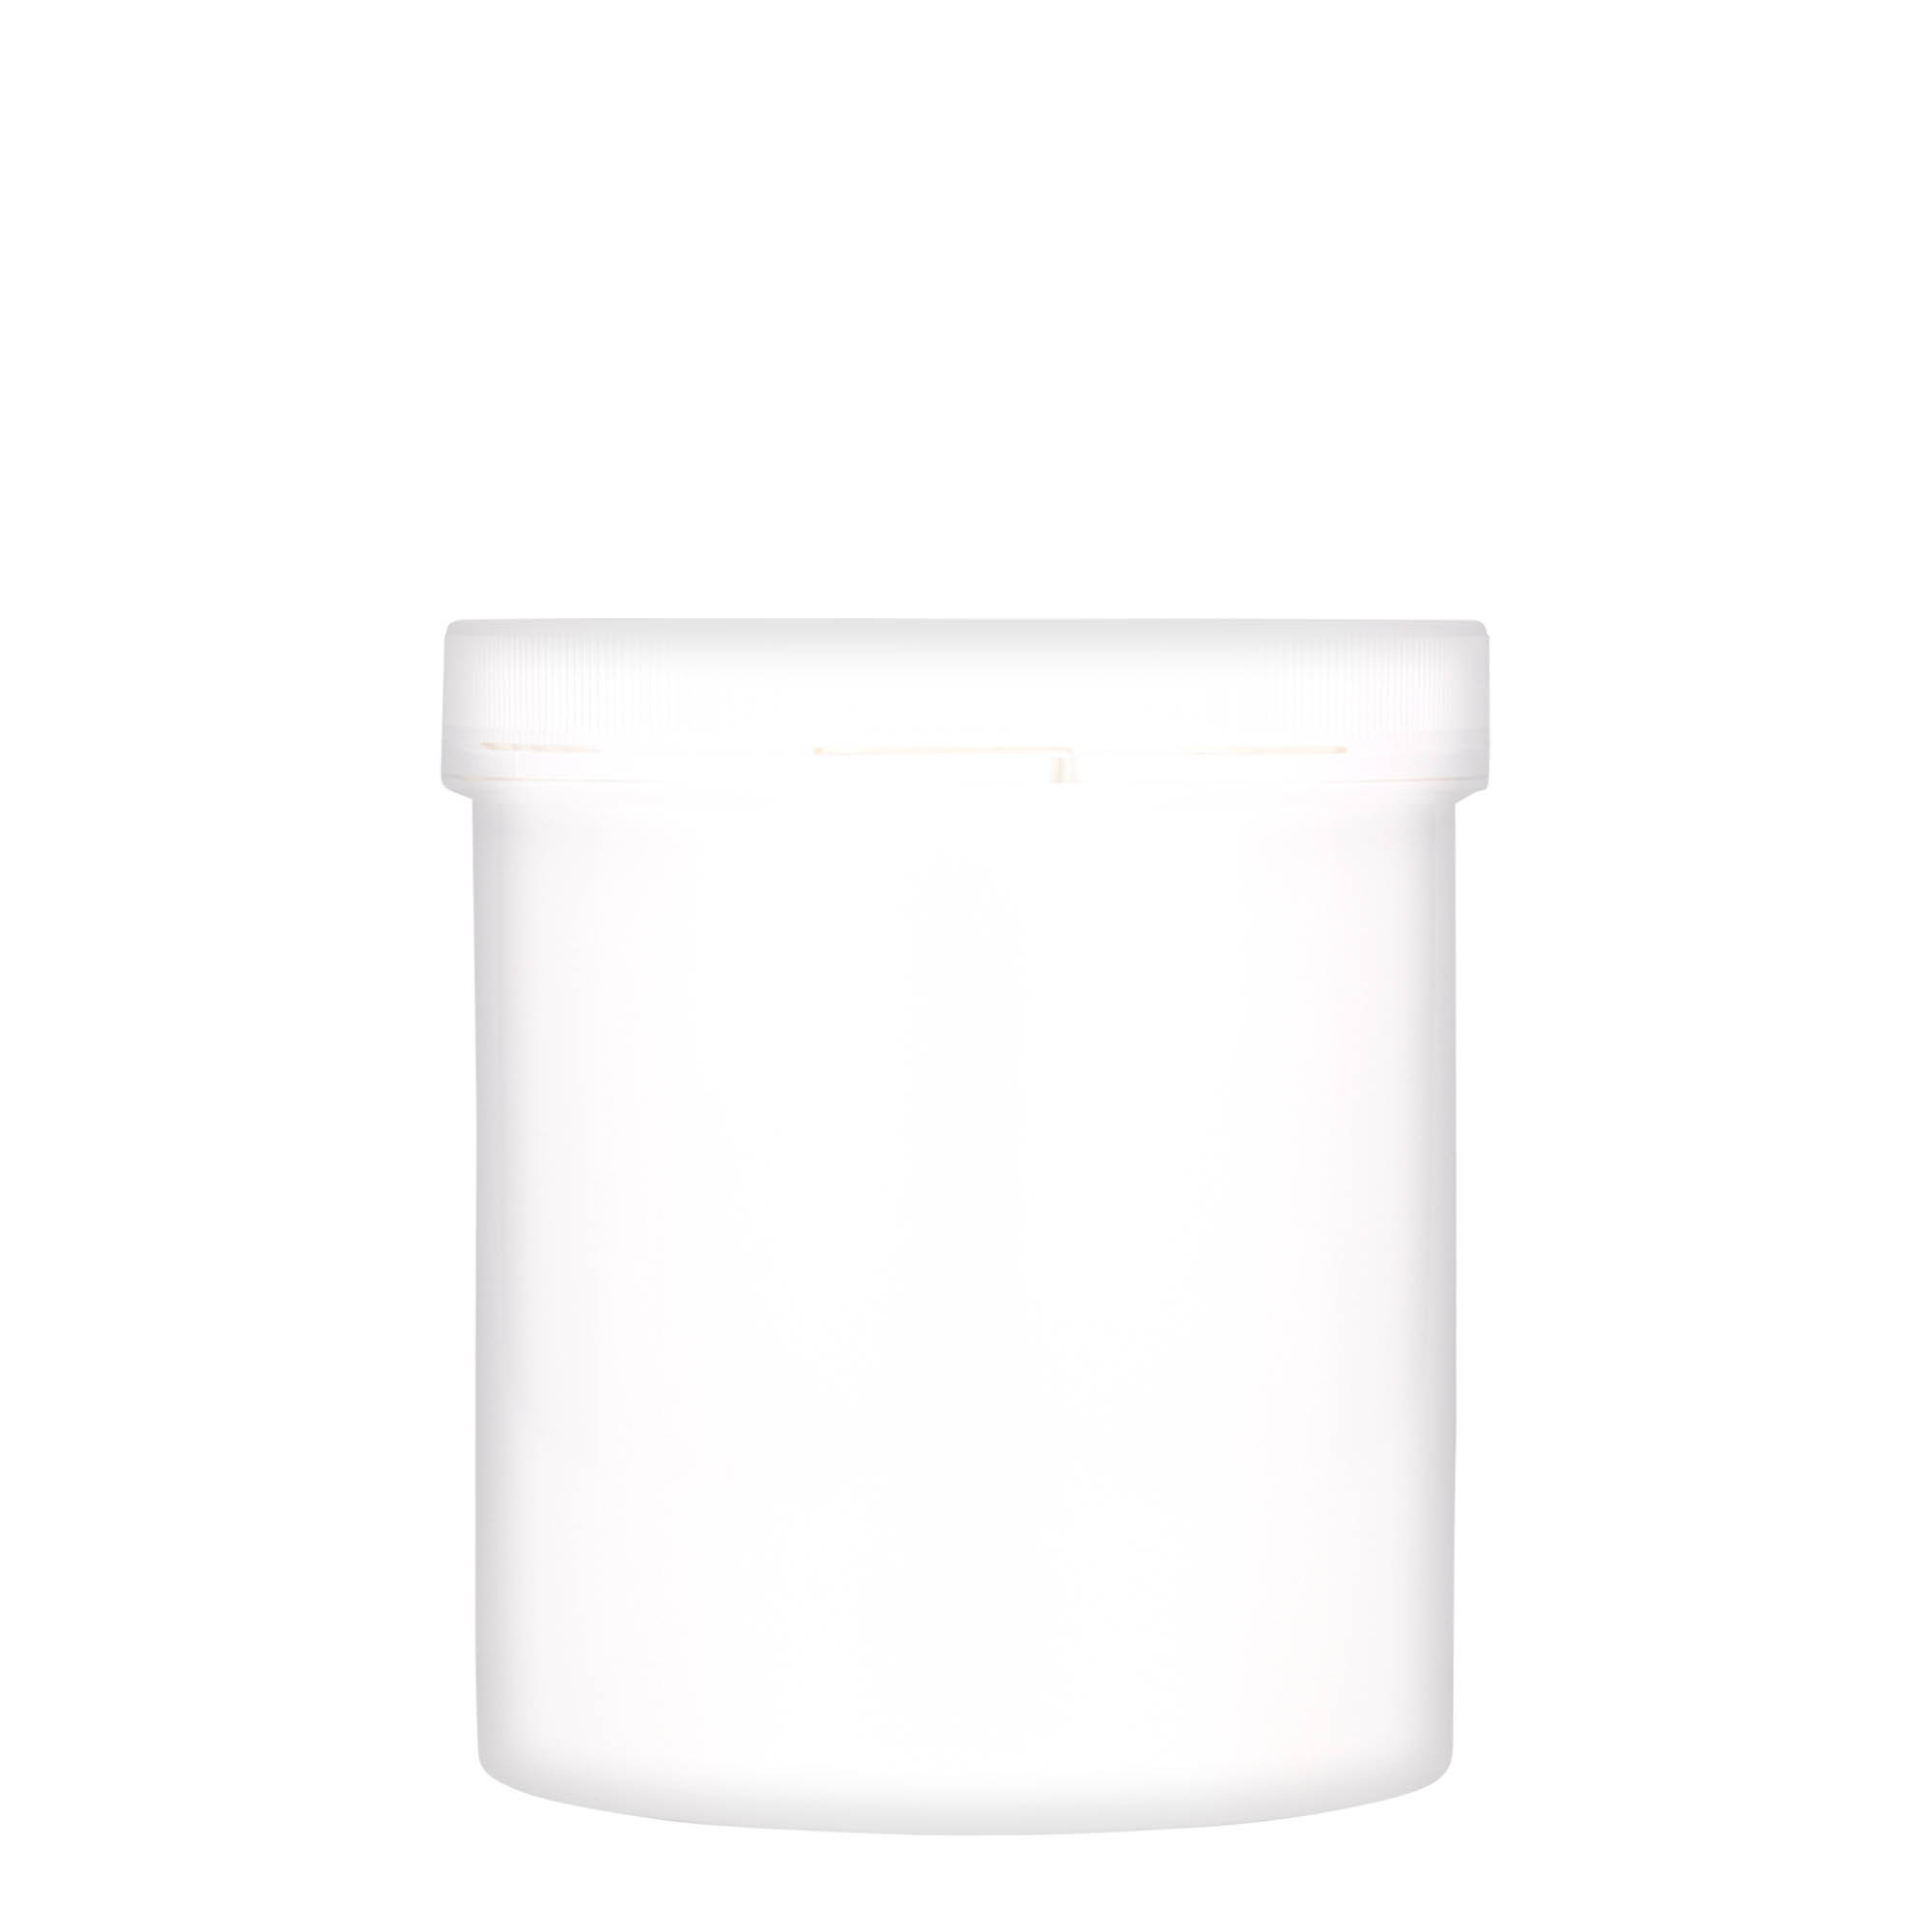 1,000 ml plastic jar 'Securilock', PP, white, closure: screw cap